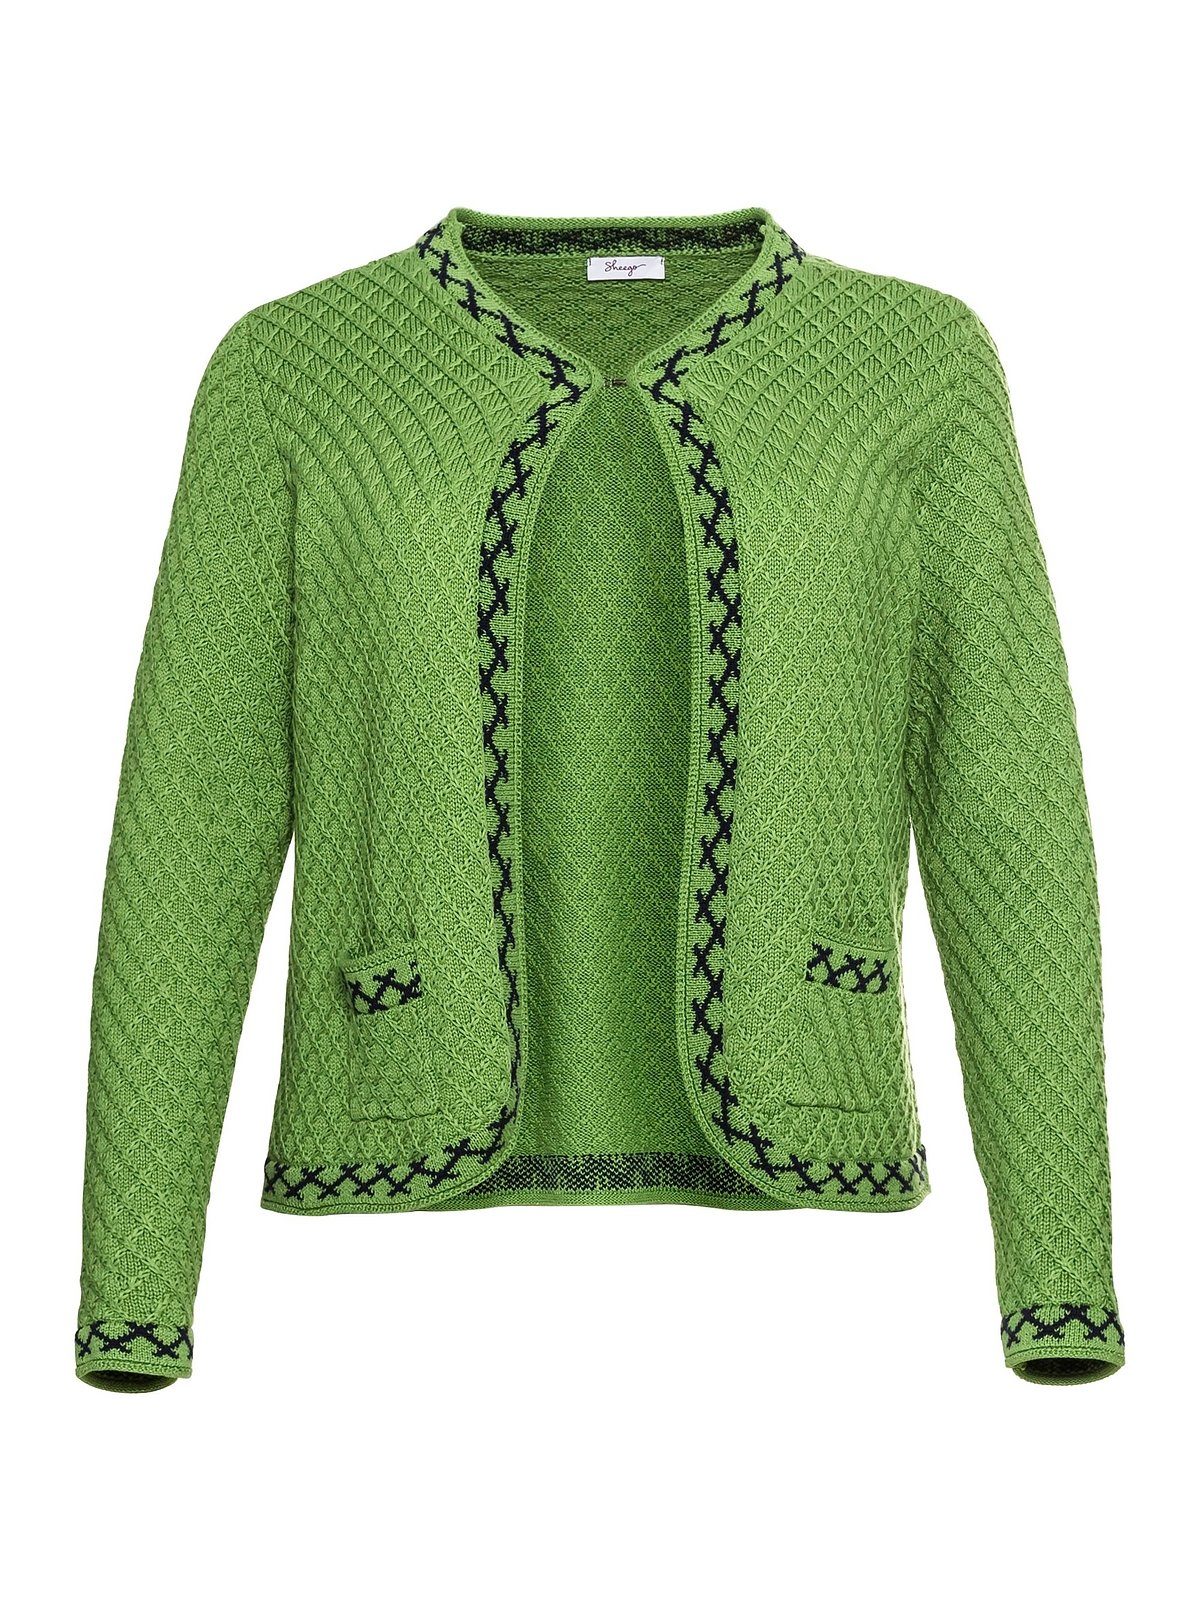 Sheego Strickjacke Große grün Trachten-Look mit Zierborte im Größen